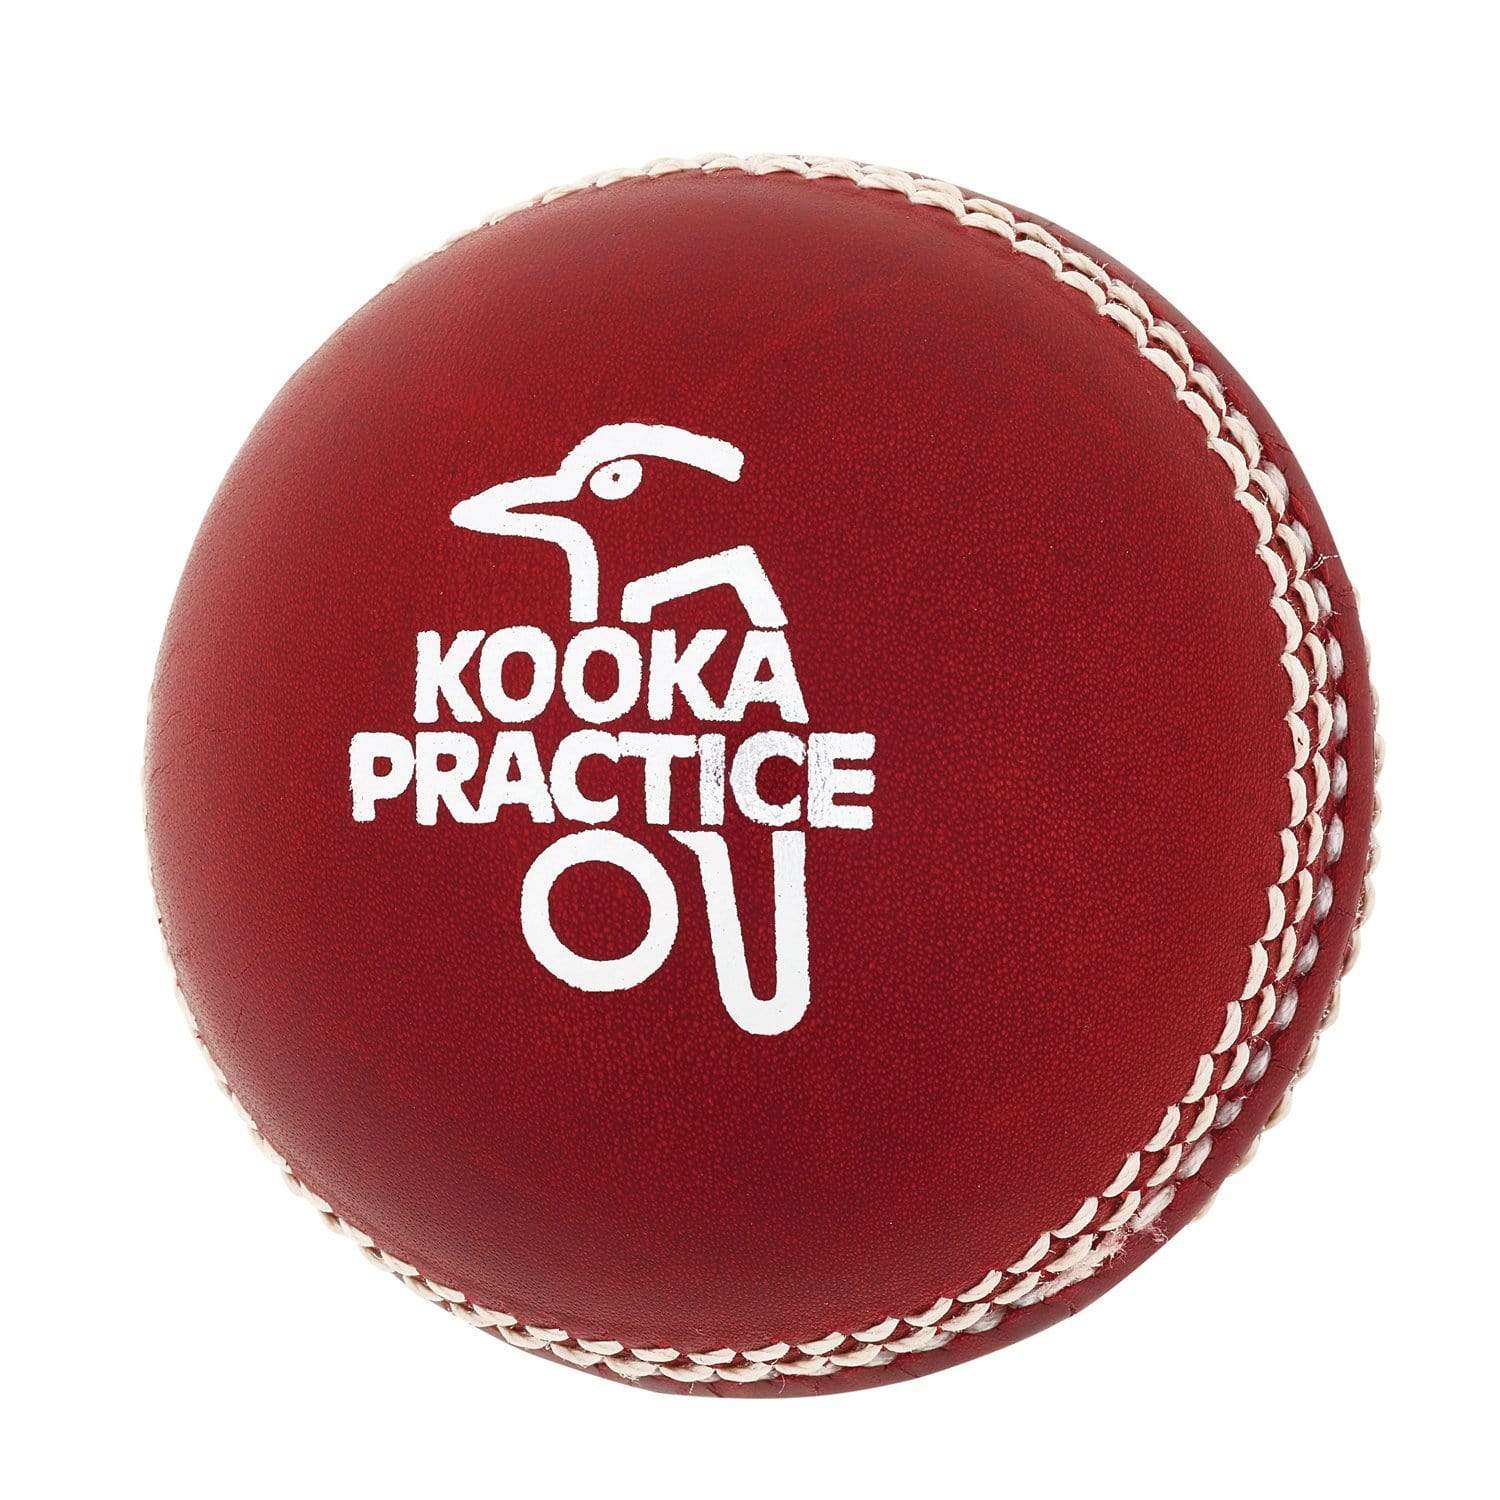 Kookaburra Cricket Balls Red Kookaburra 142g Practice Cricket Ball